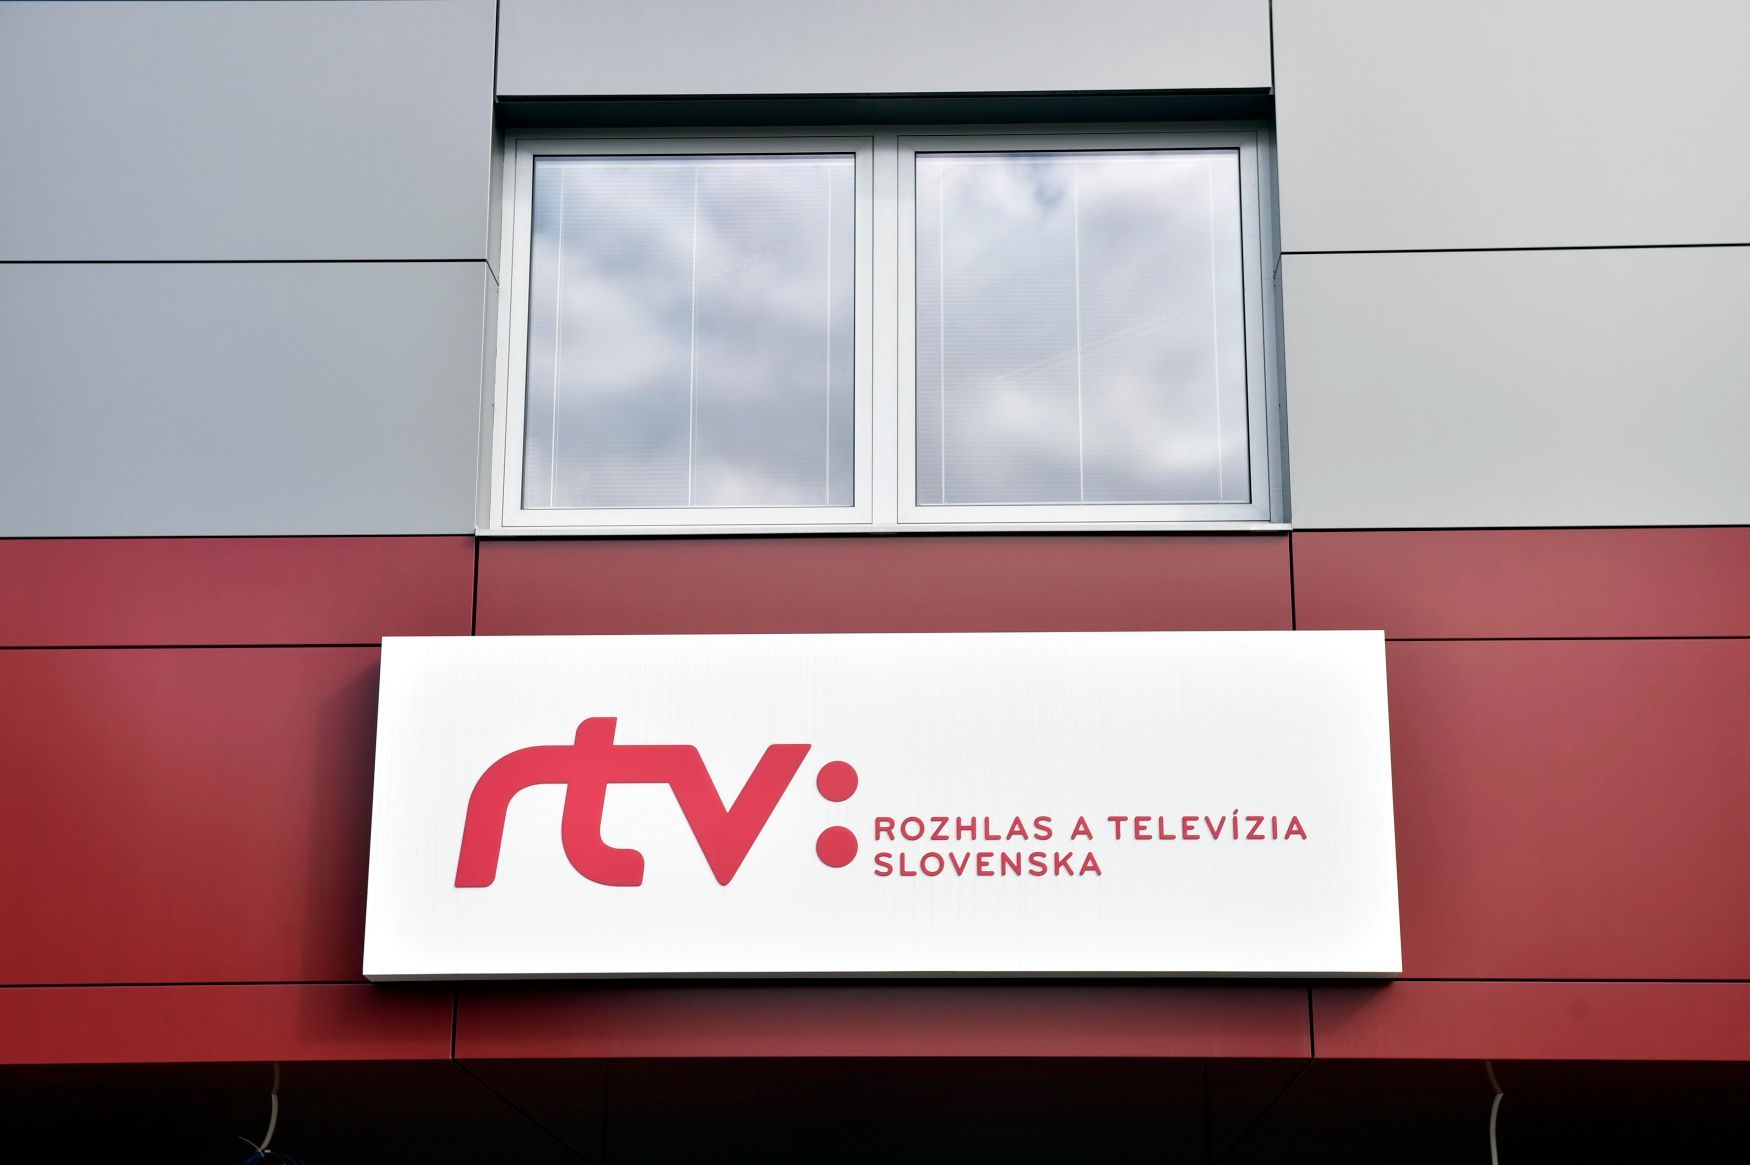 RTVS, RTV, slovenská veřejnoprávní televize, Rozhlas a televize Slovenska.